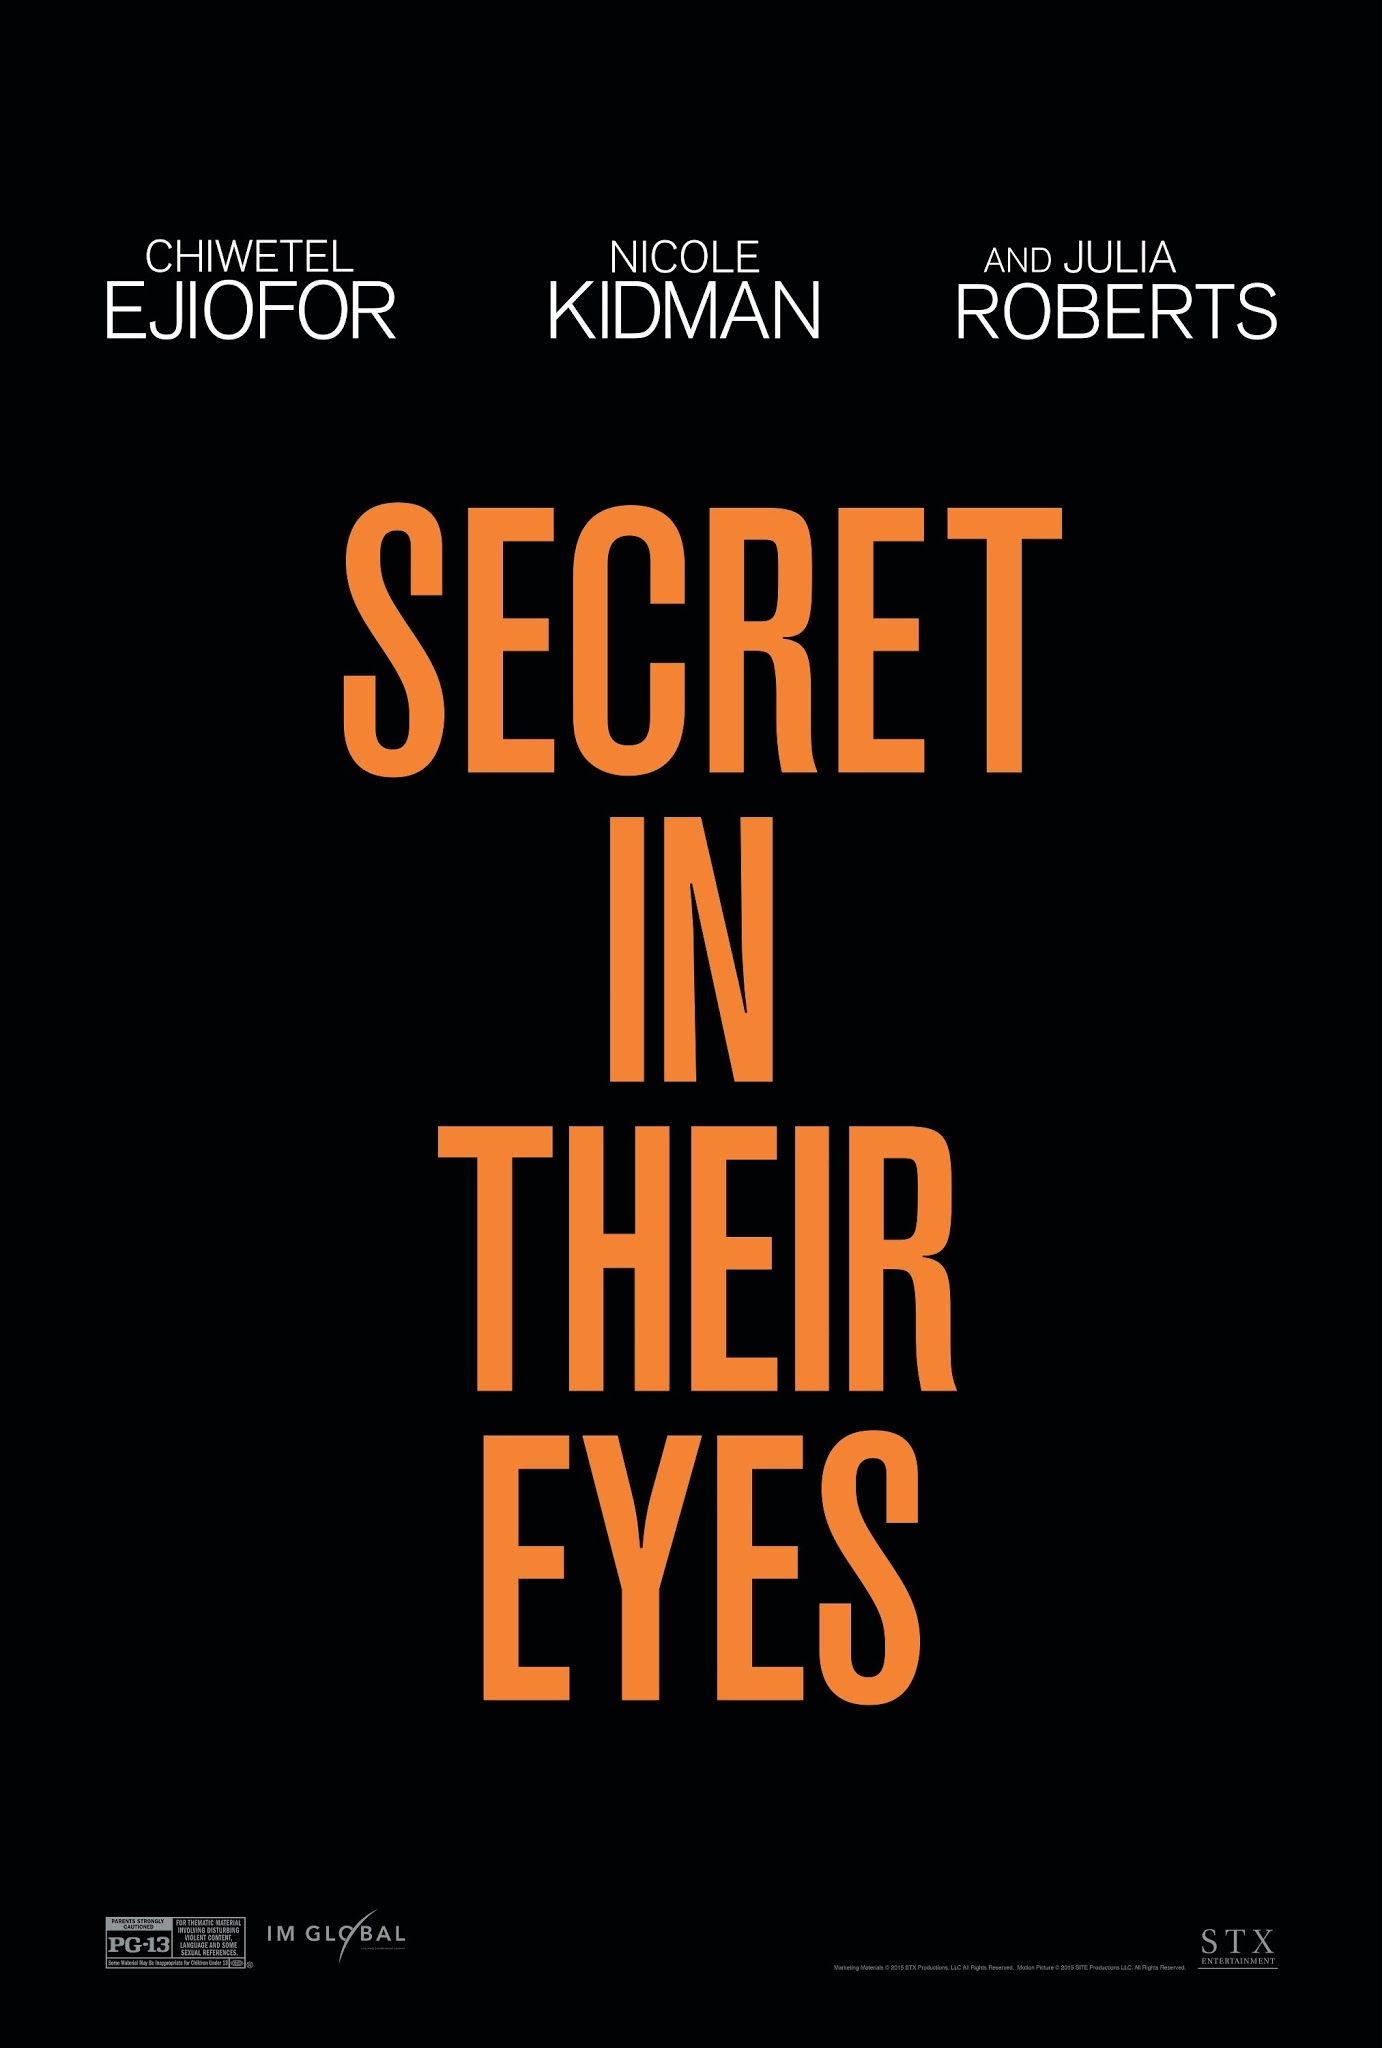 Тайна в их глазах